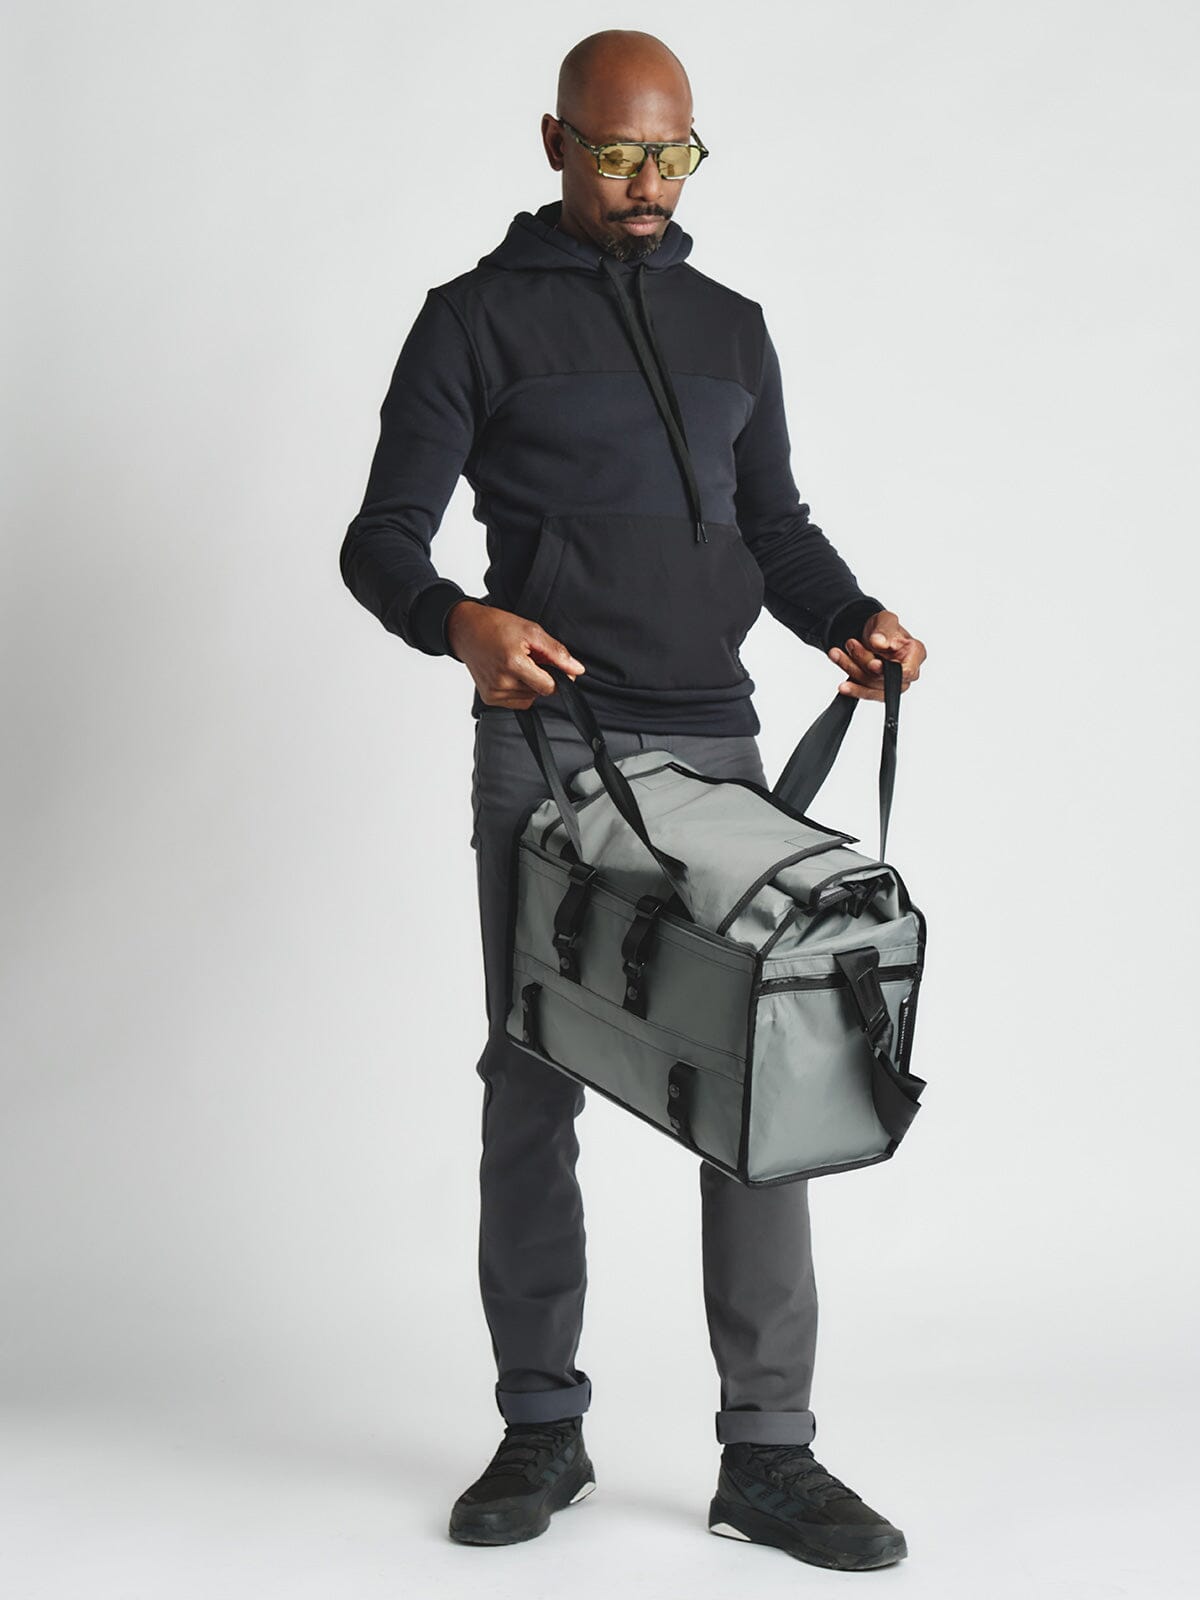 Helmsman : VX by Mission Workshop - Säänkestävät laukut ja tekniset vaatteet - San Francisco & Los Angeles - Rakennettu kestämään - ikuinen takuu